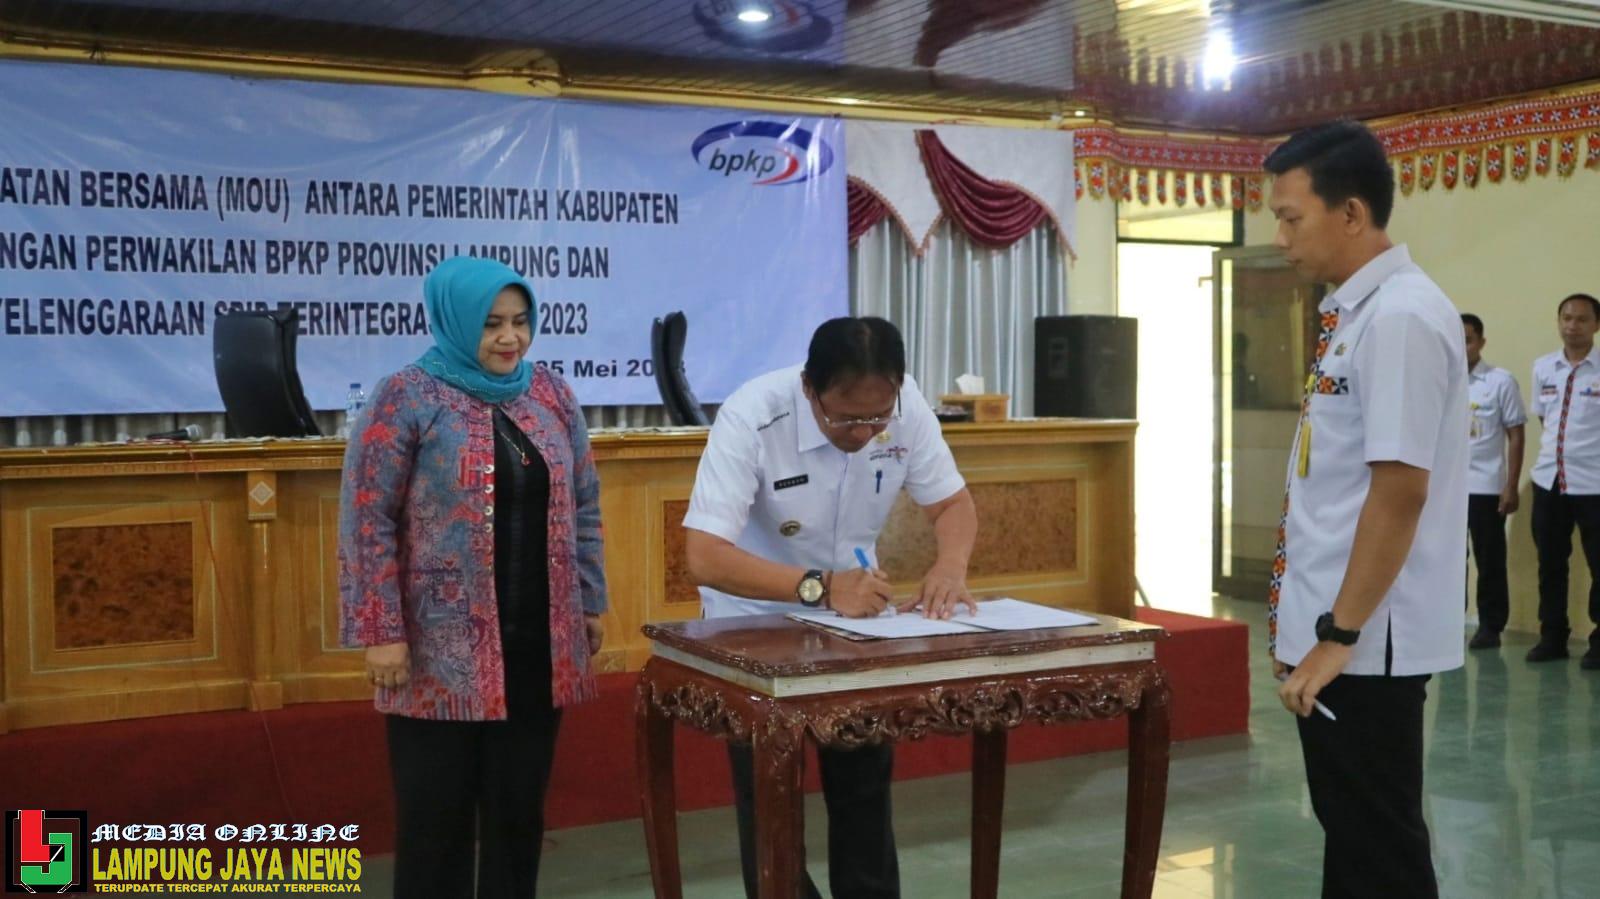 Pemerintah Kabupaten Lampung MoU Bersama BPKP Provinsi Lampung Terkait Pengembangan Manajemen Pemerintah Daerah